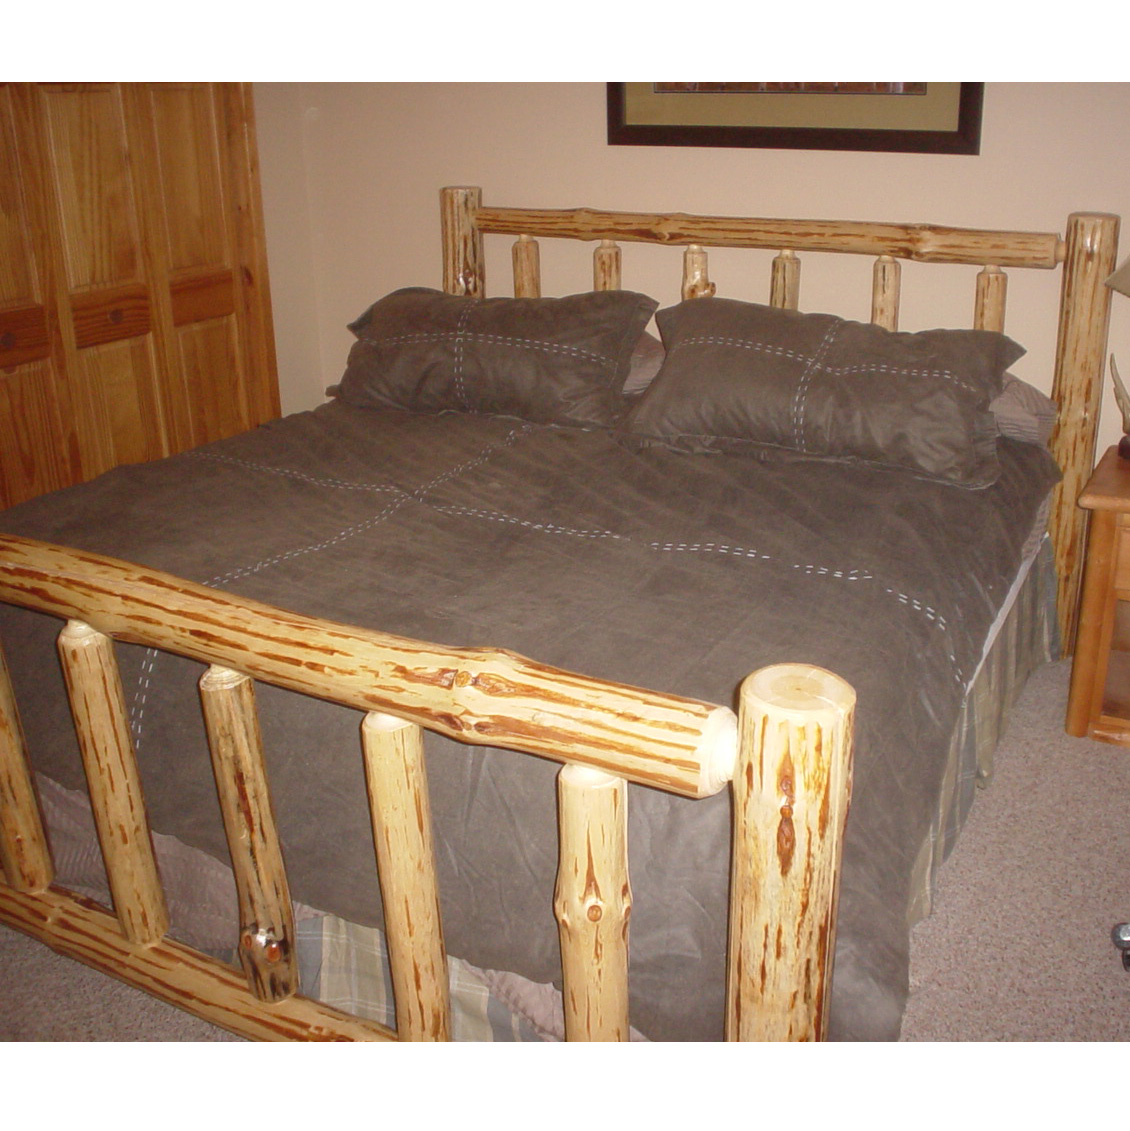 Pine Log Queen Size Bed Frame K A, Log Bed Frame